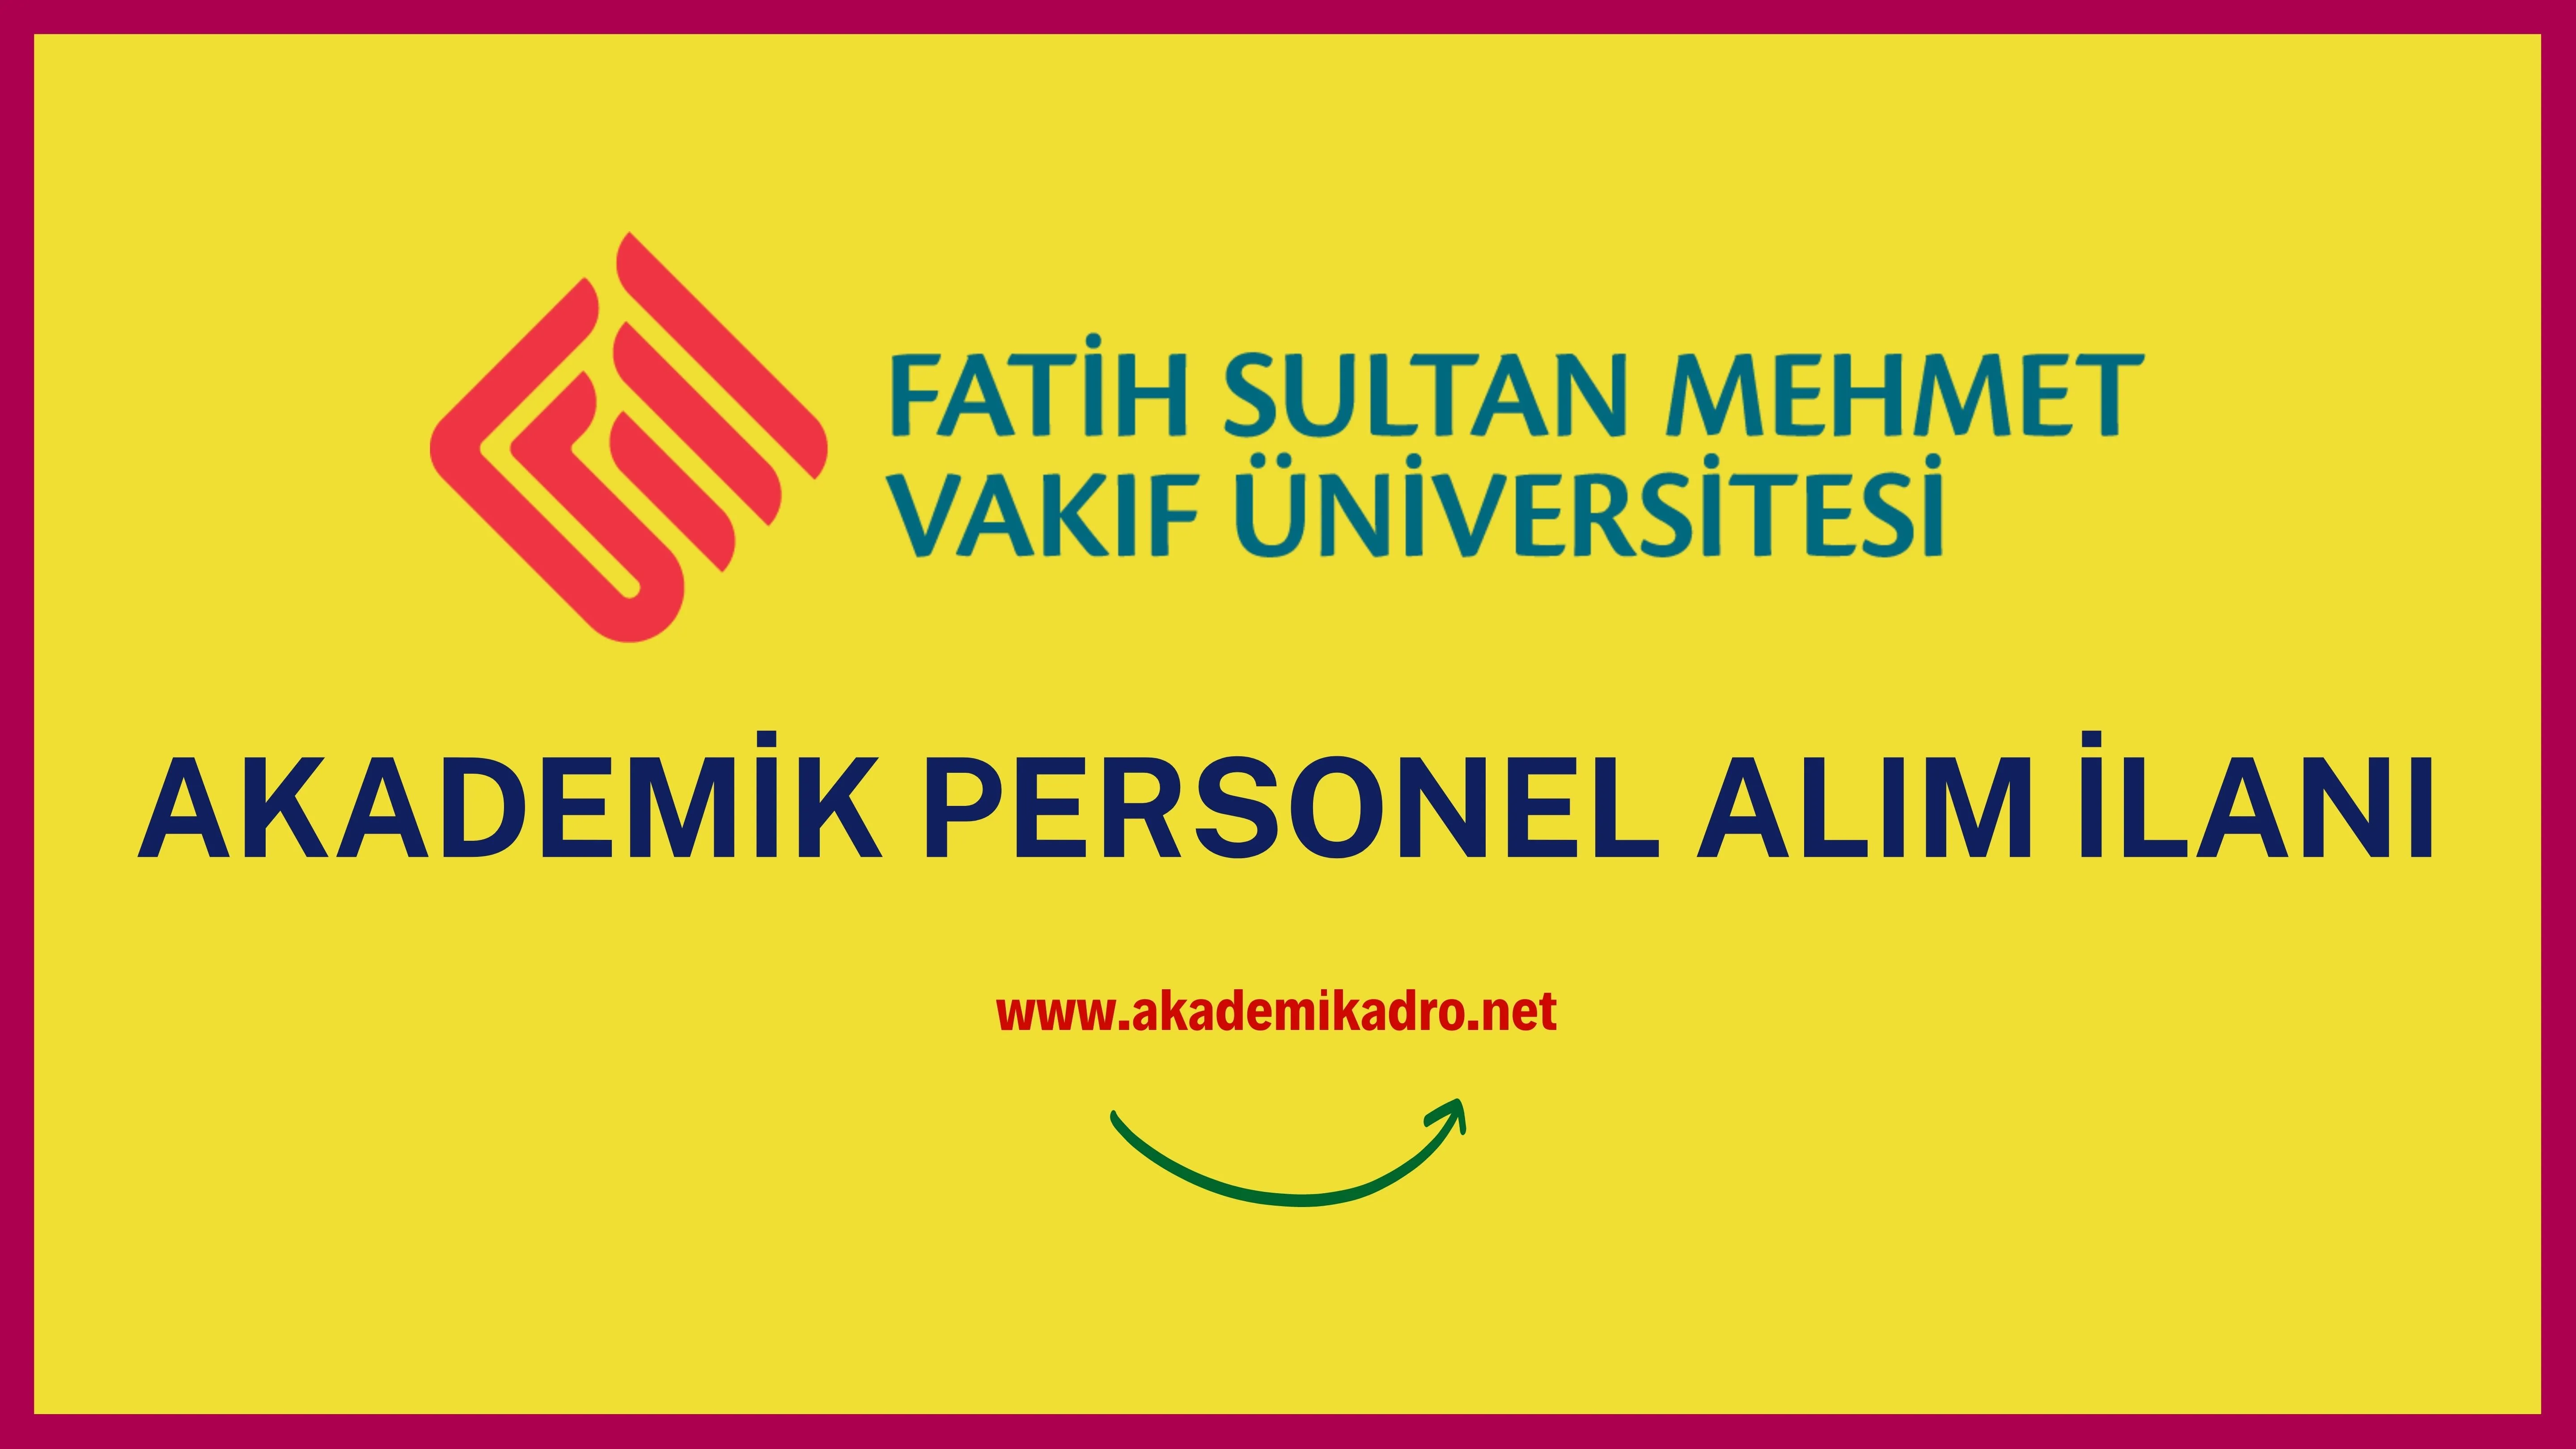 Fatih Sultan Mehmet Vakıf Üniversitesi birçok alandan 15 Öğretim üyesi alacak.